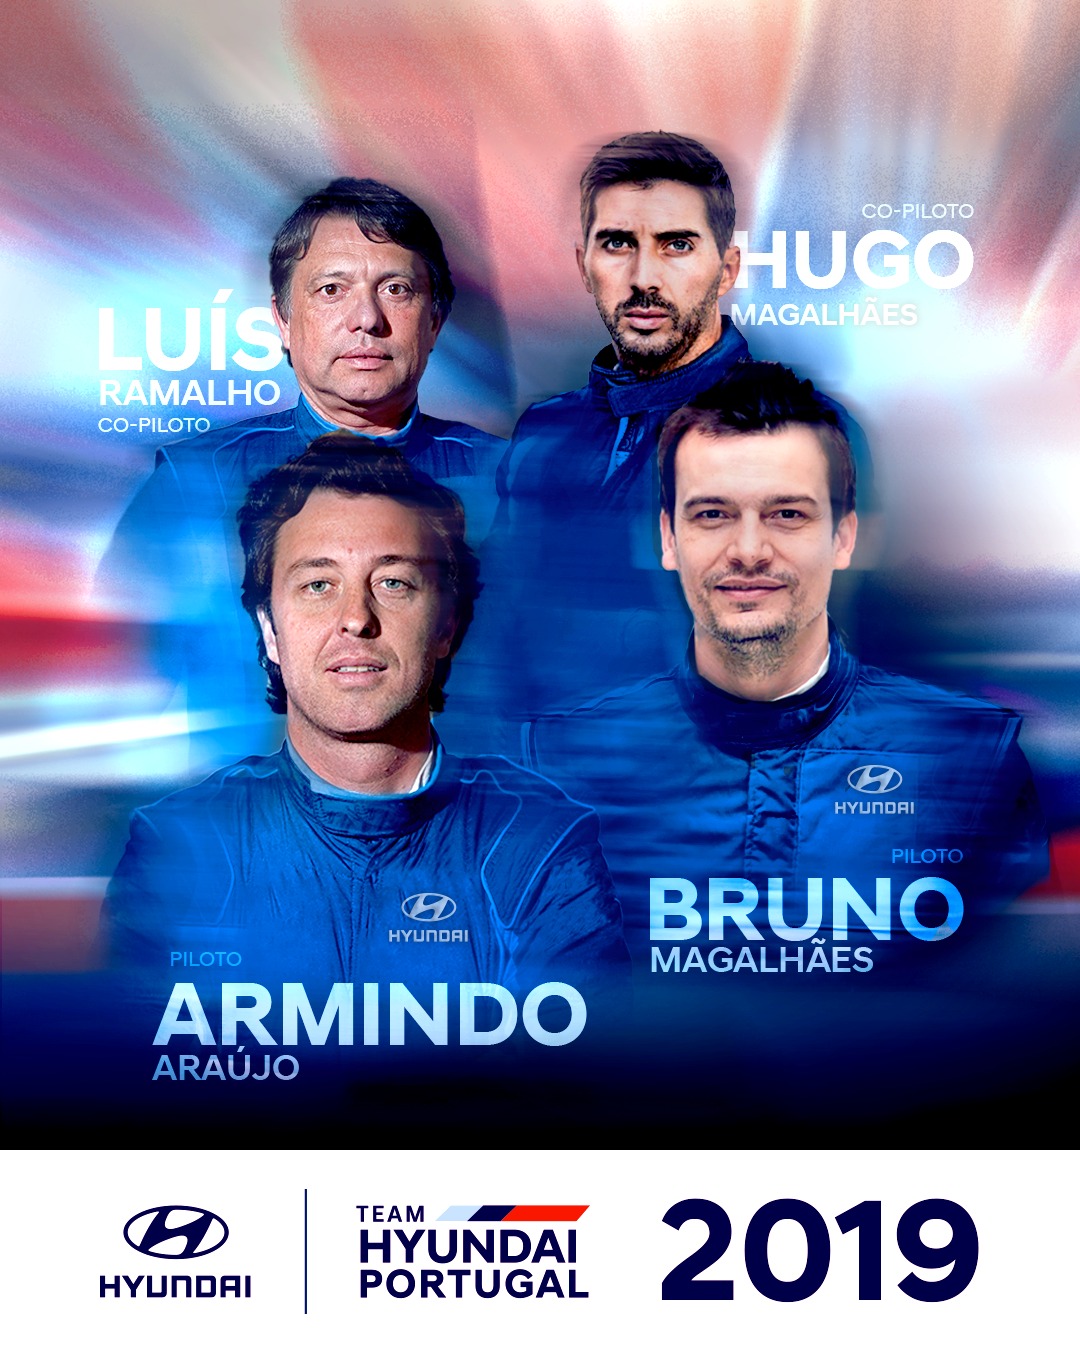 Team Hyundai_Portugal_com_Armindo_Araujo_e_Bruno_Magalhaes_no_CPR_2019